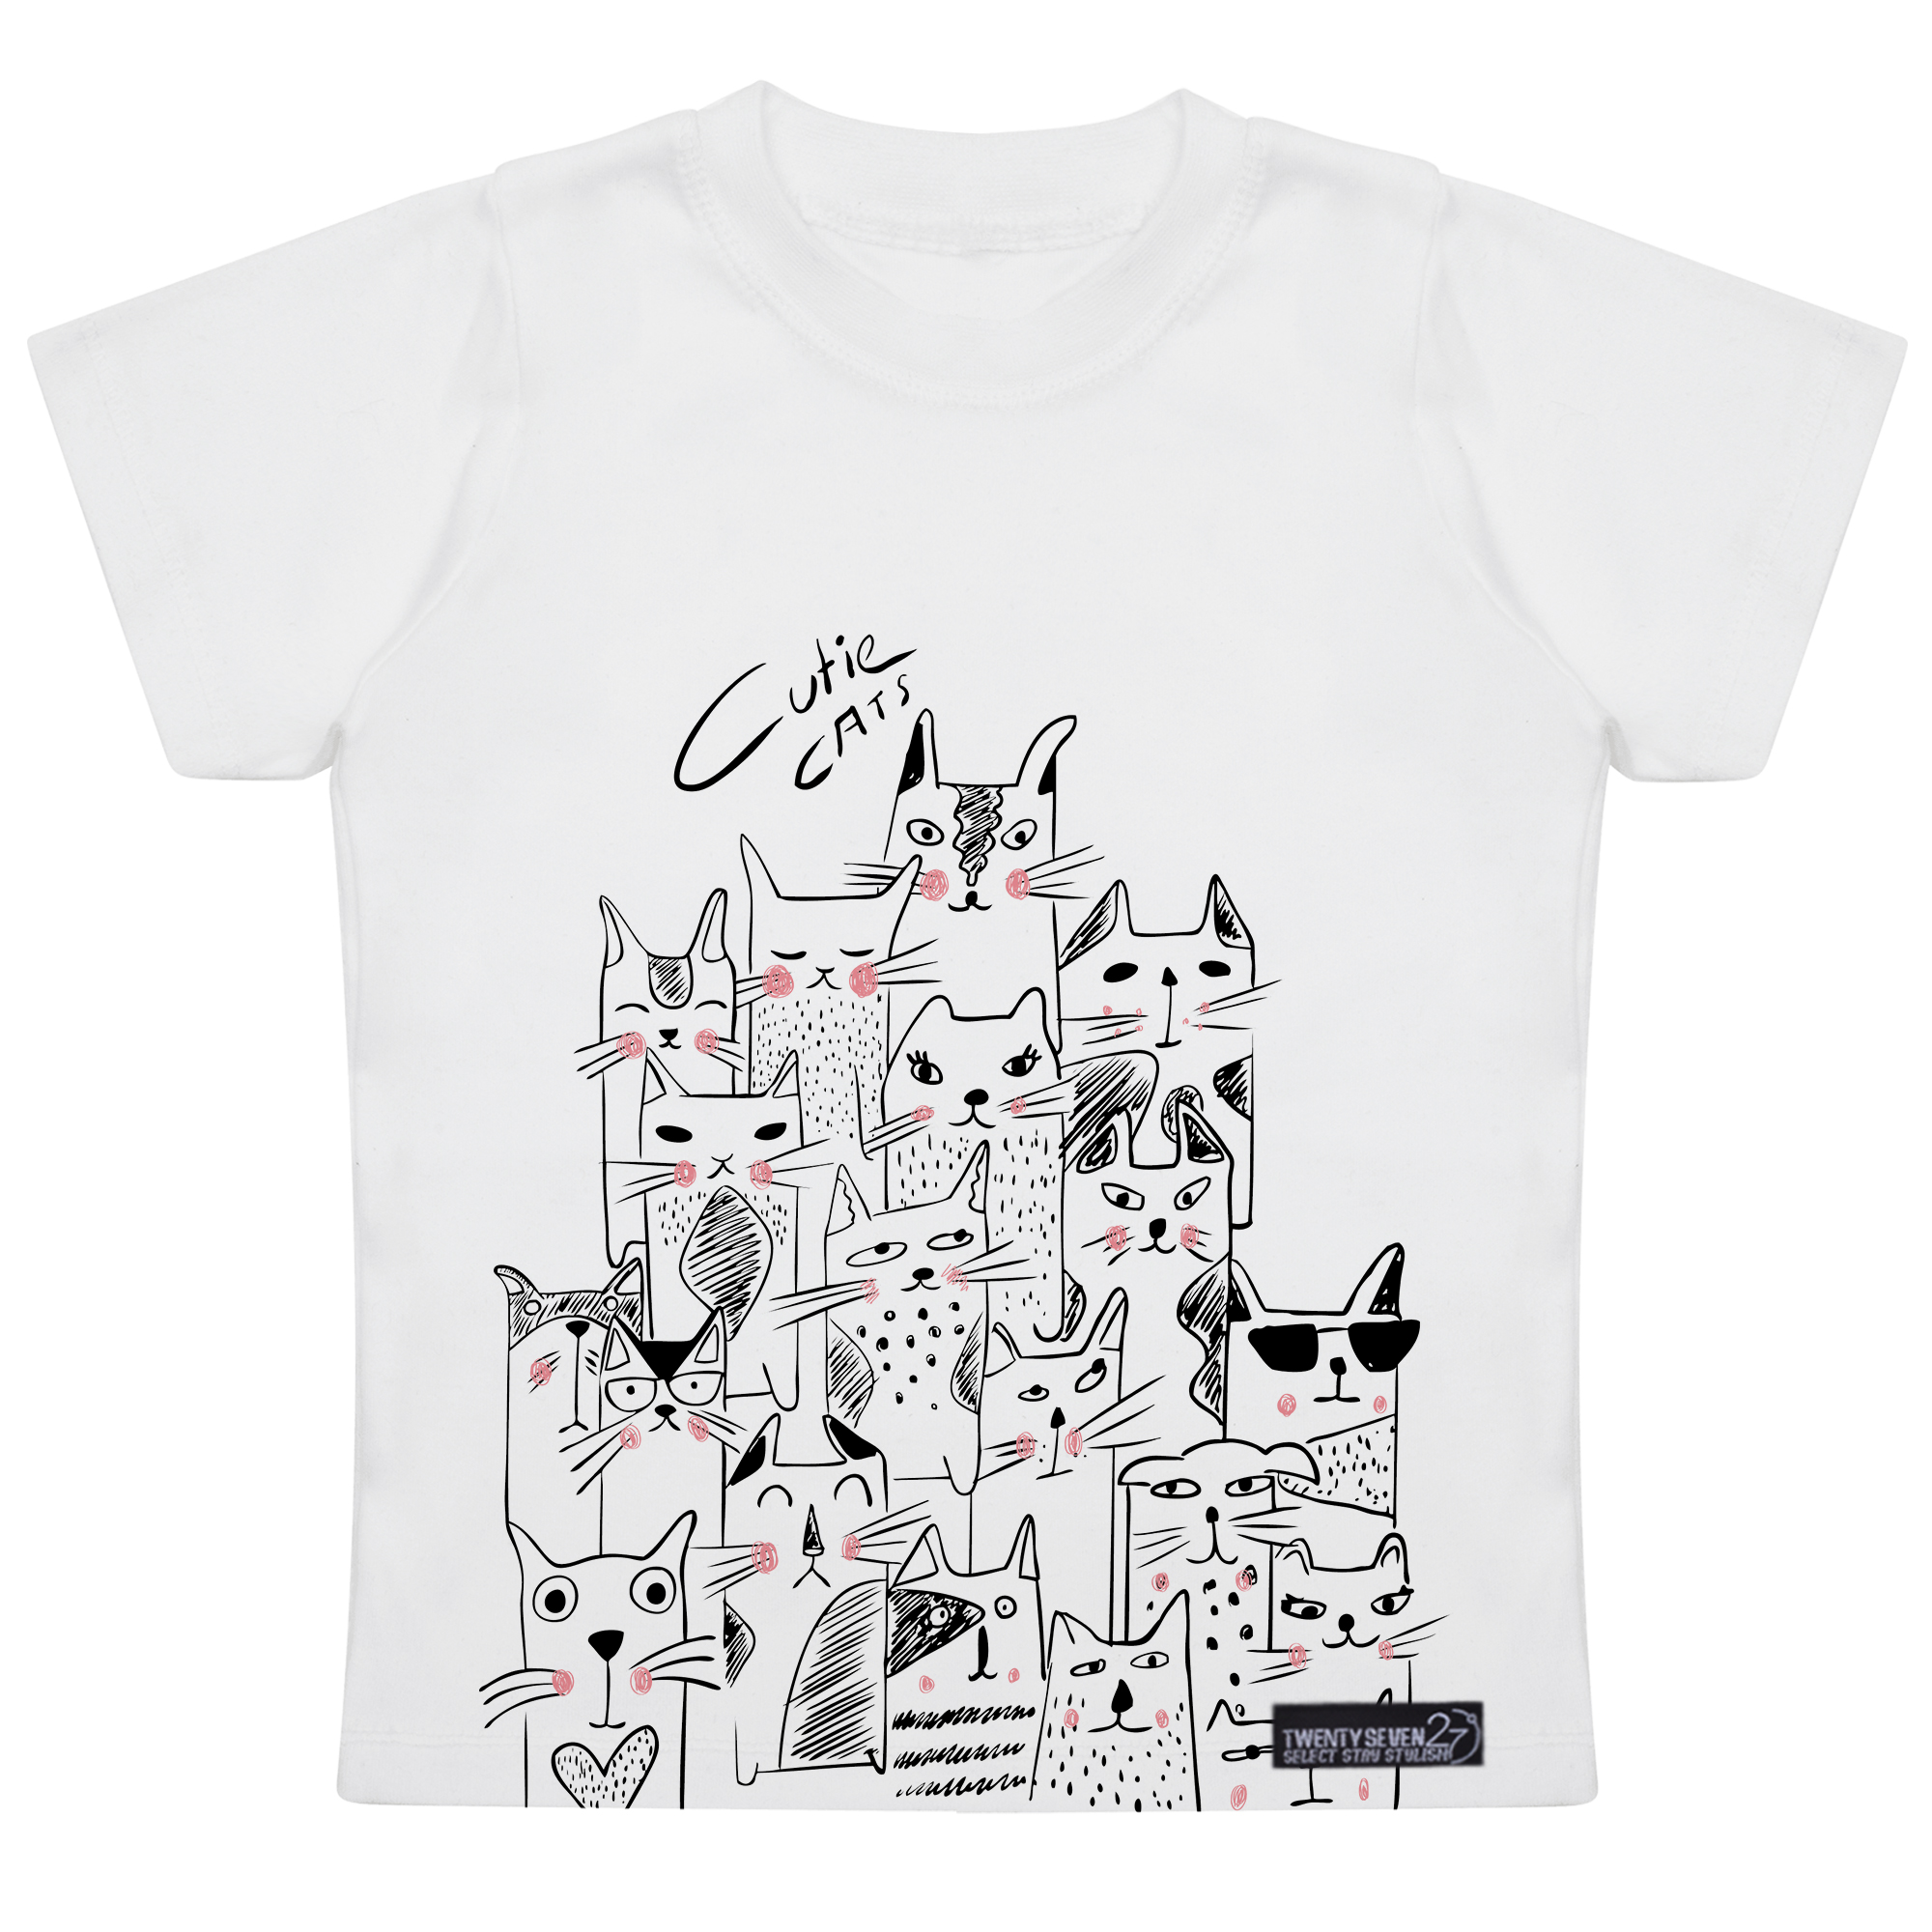 تی شرت آستین کوتاه پسرانه 27 مدل Cute Cats کد MH930 -  - 1